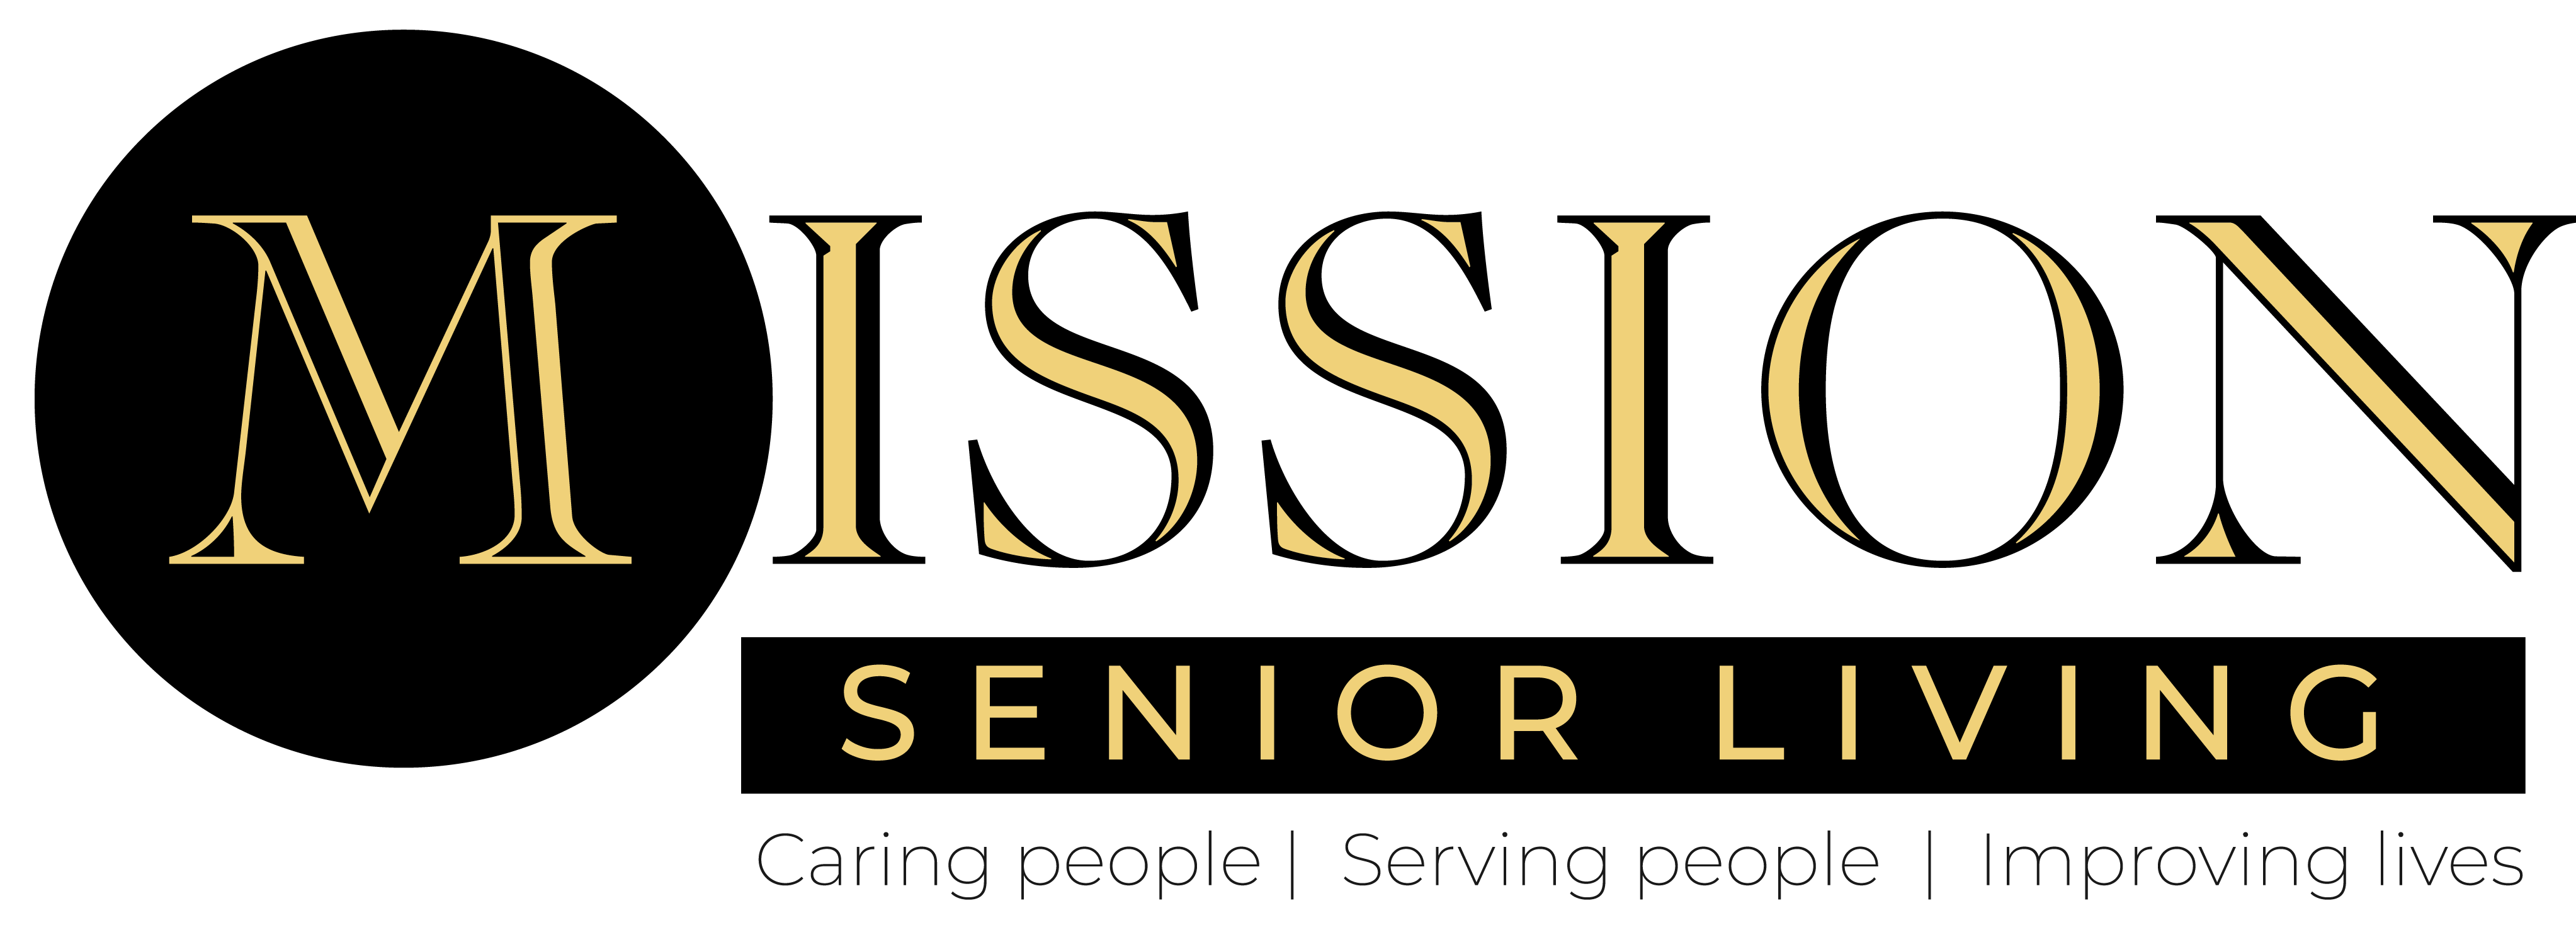 Mission senior living logo.